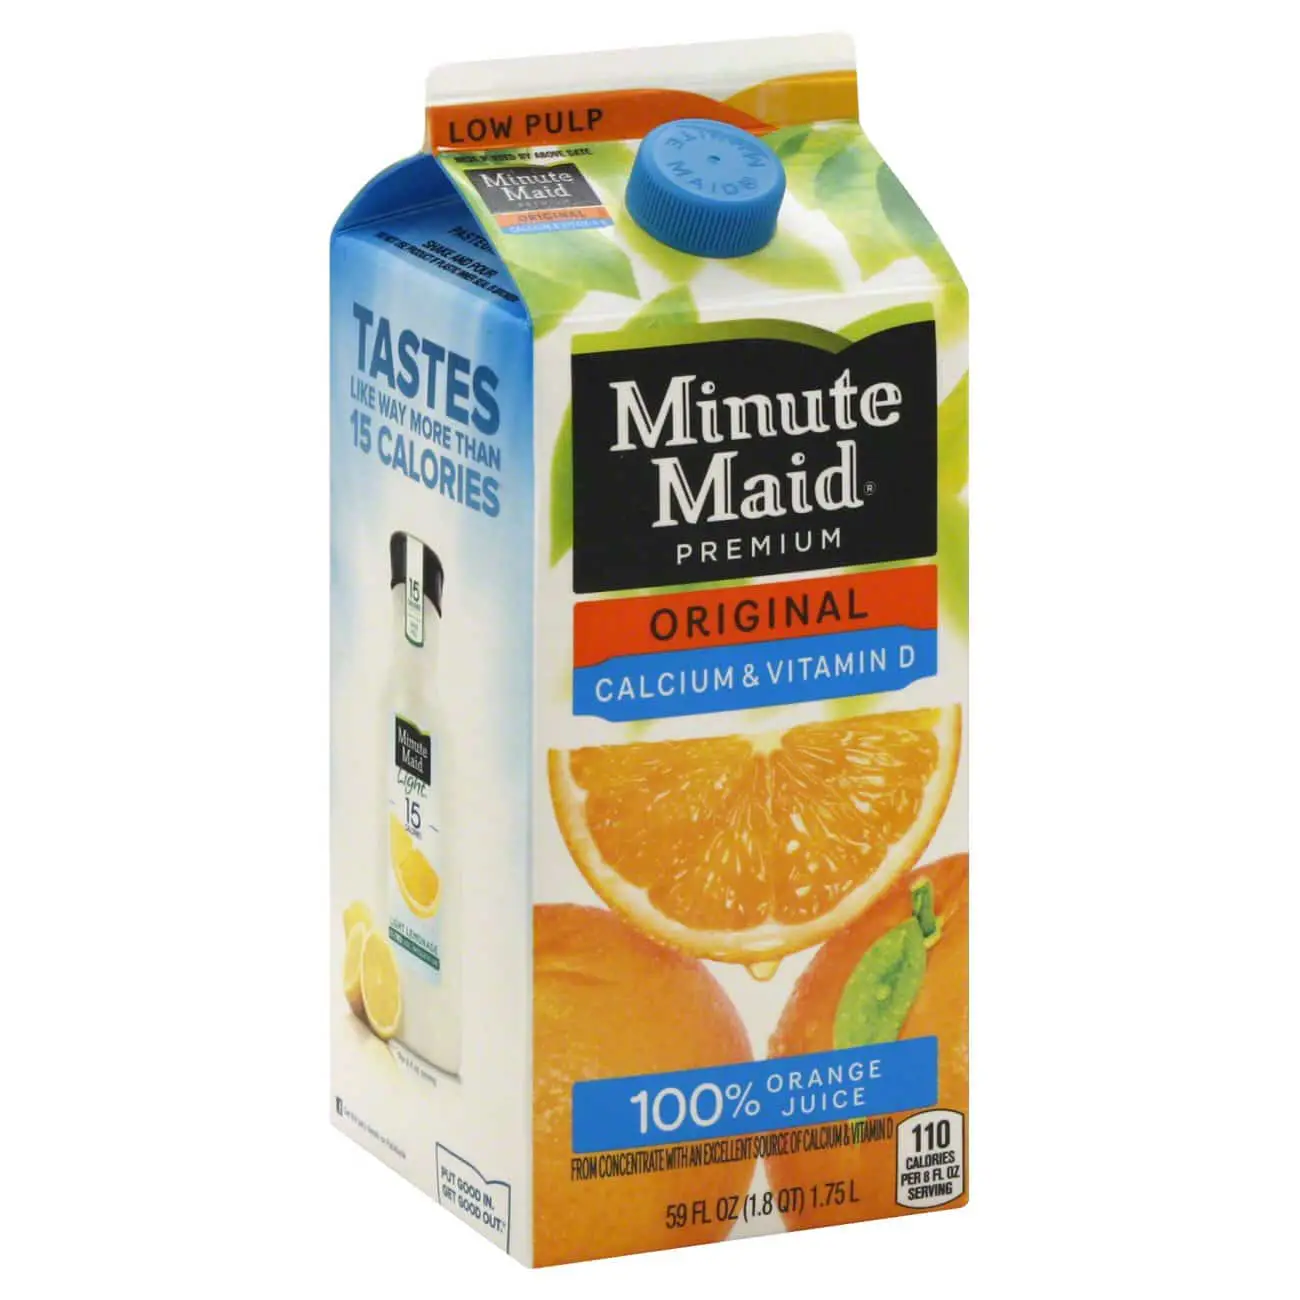 Minute Maid Premium Original Calcium &  Vitamin D Low Pulp 100% Orange ...